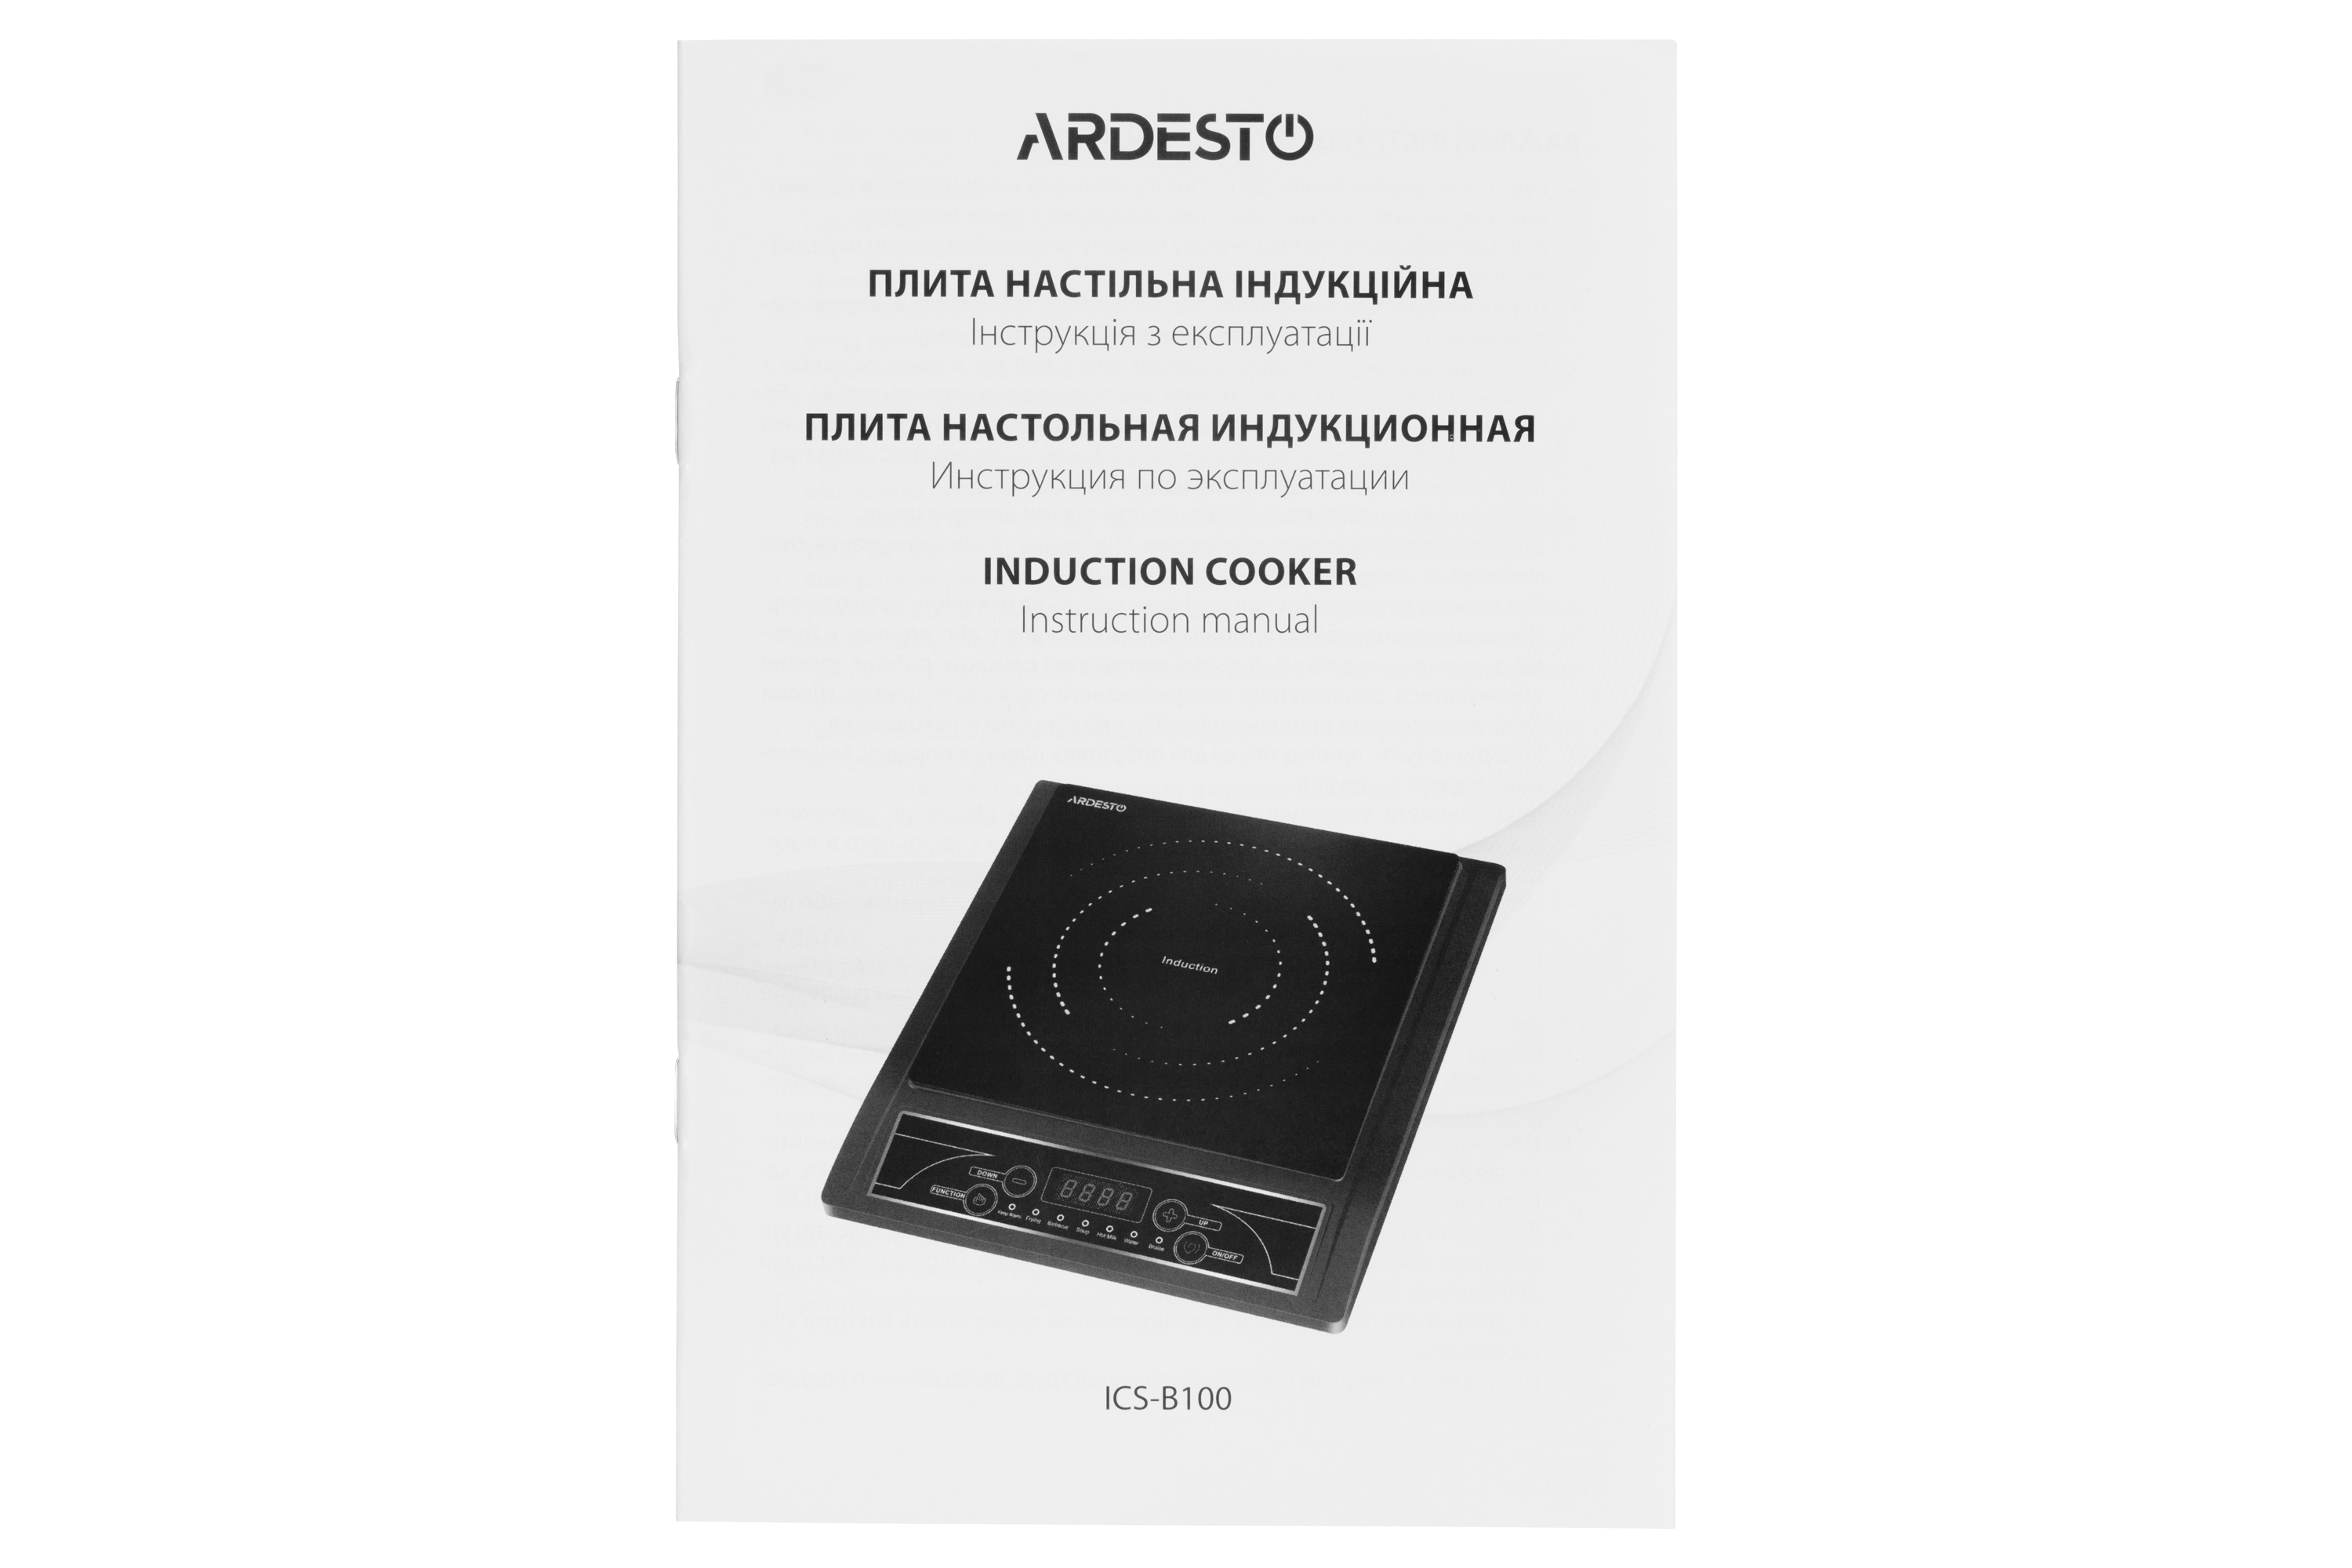 продаємо Ardesto ICS-B100 в Україні - фото 4